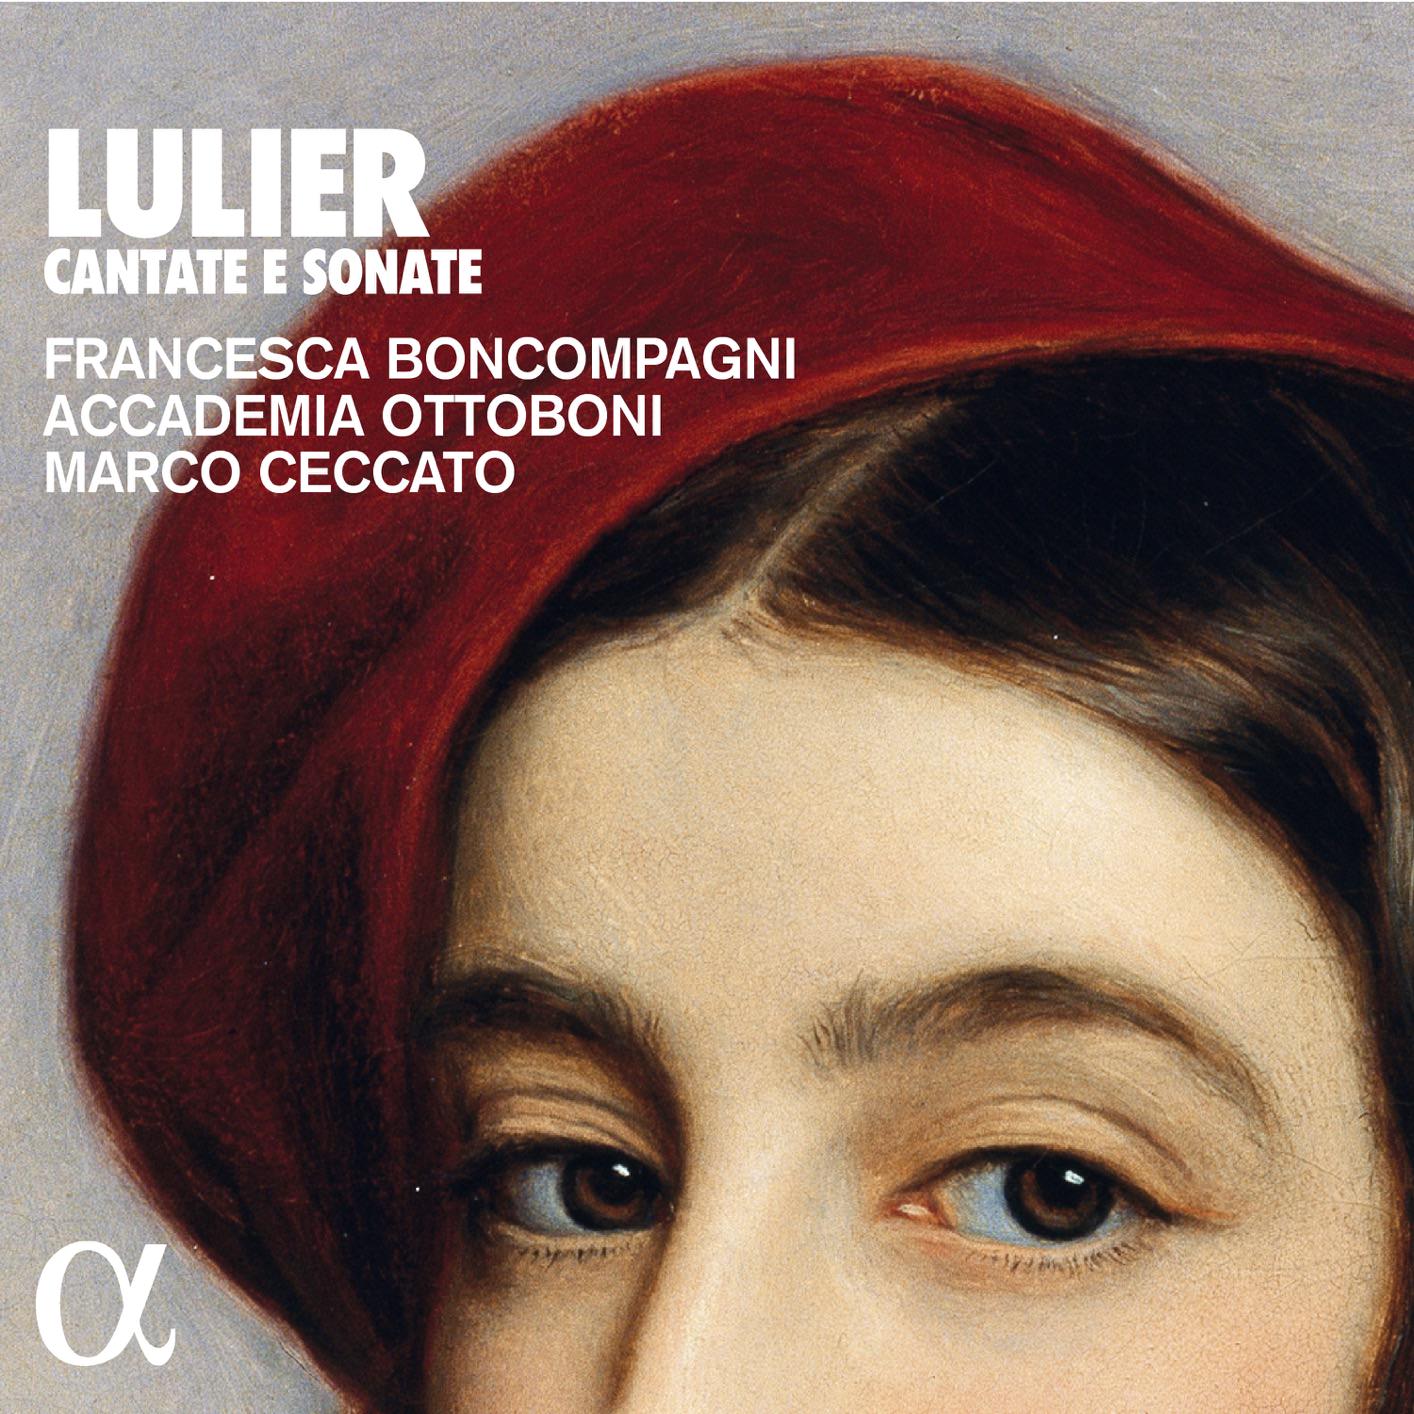 Francesca Boncompagni, Accademia Ottoboni, Marco Ceccato – Lulier: Cantate e sonate (2018) [FLAC 24bit/96kHz]